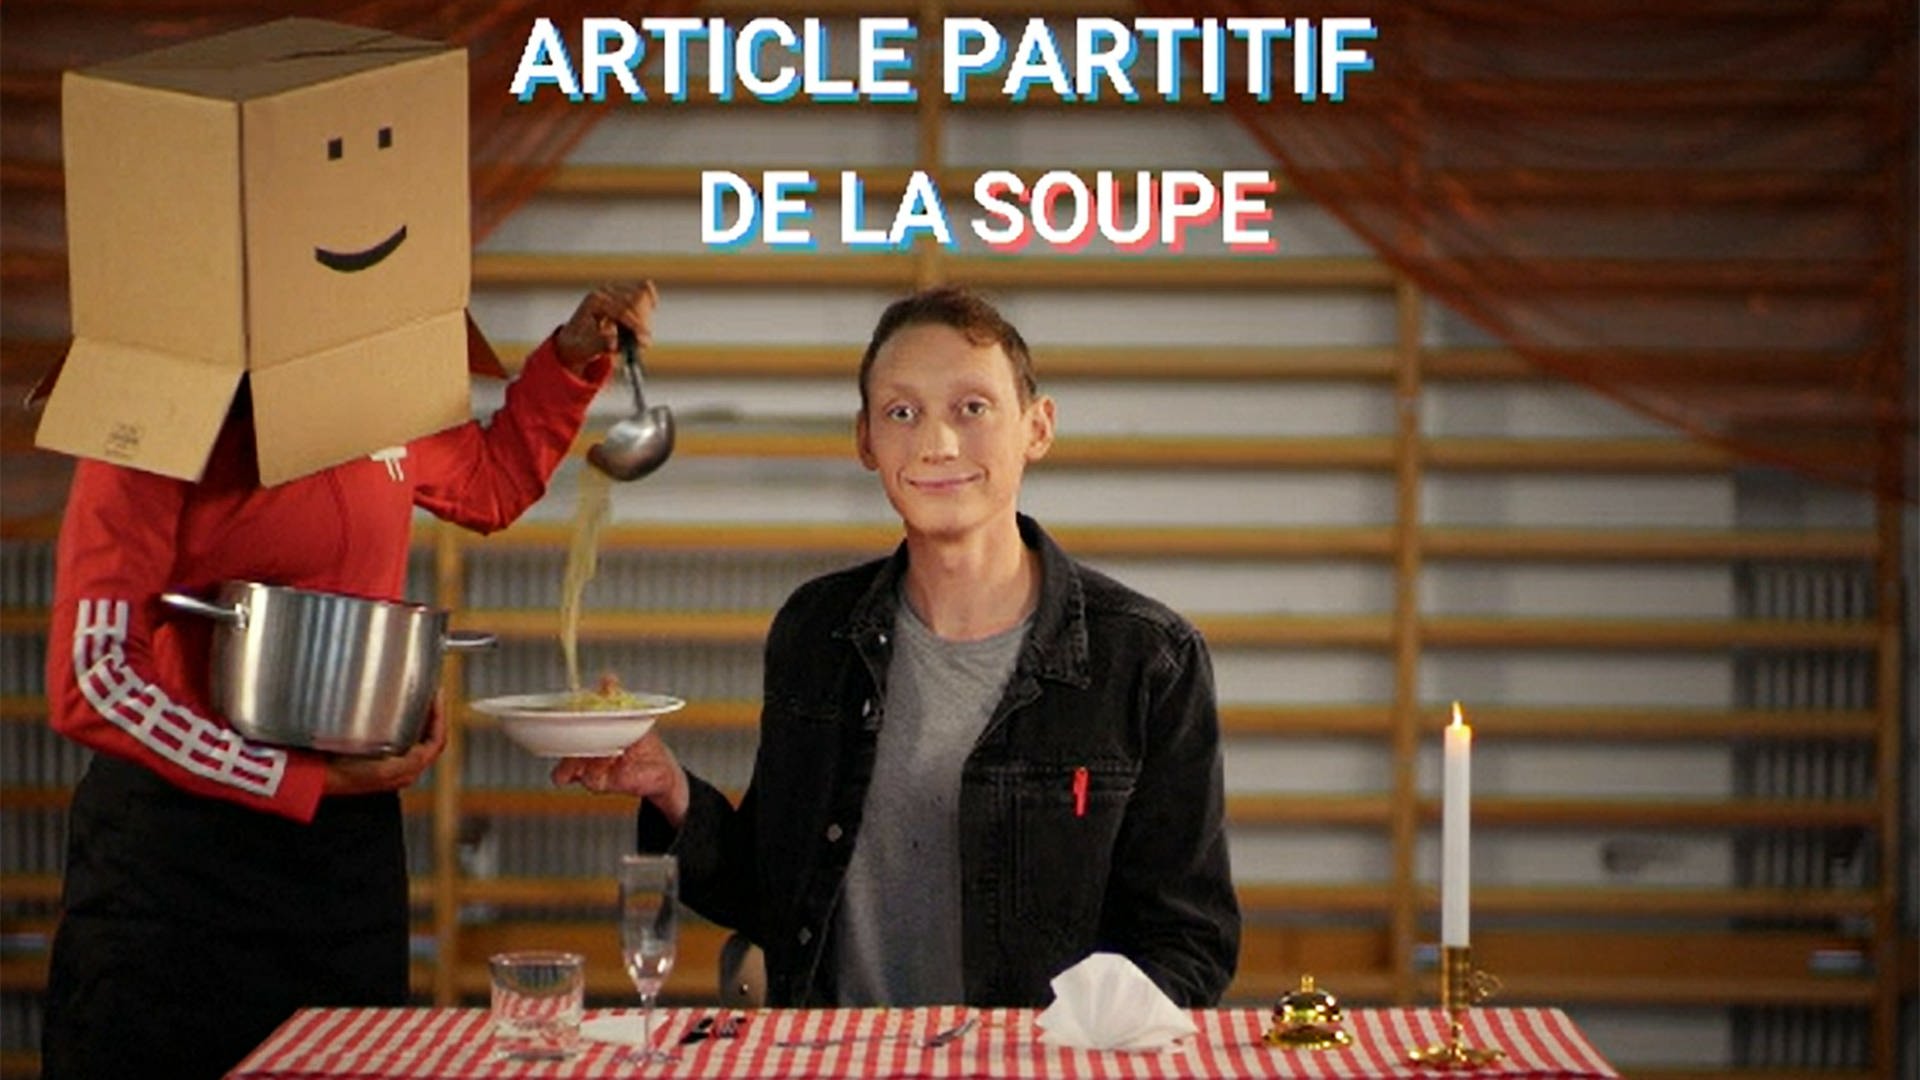 Ein junger Mann bekommt Suppe serviert, über ihm die Einblendung "article partitif - de la soupe"